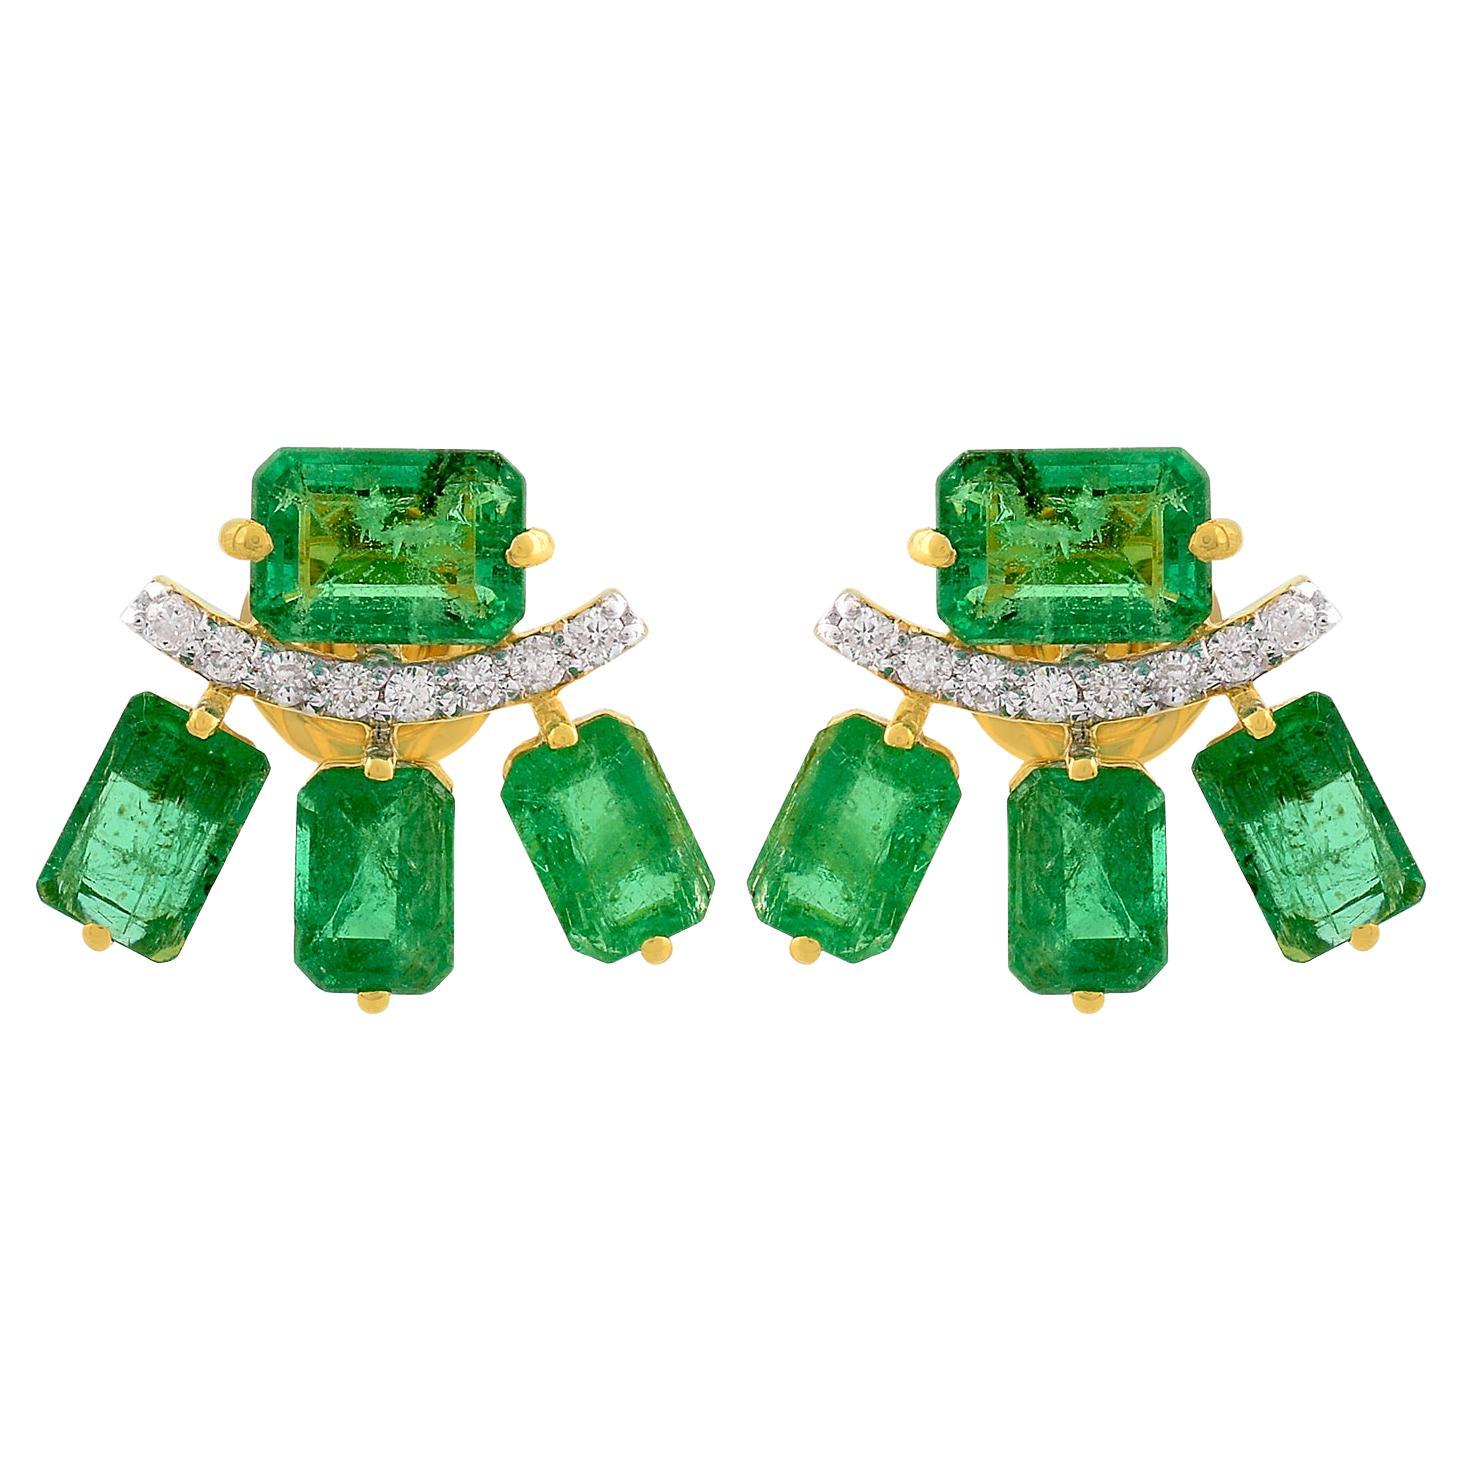 Achteckige Smaragd-Edelstein-Ohrstecker aus massivem 18 Karat Gelbgold mit Diamanten